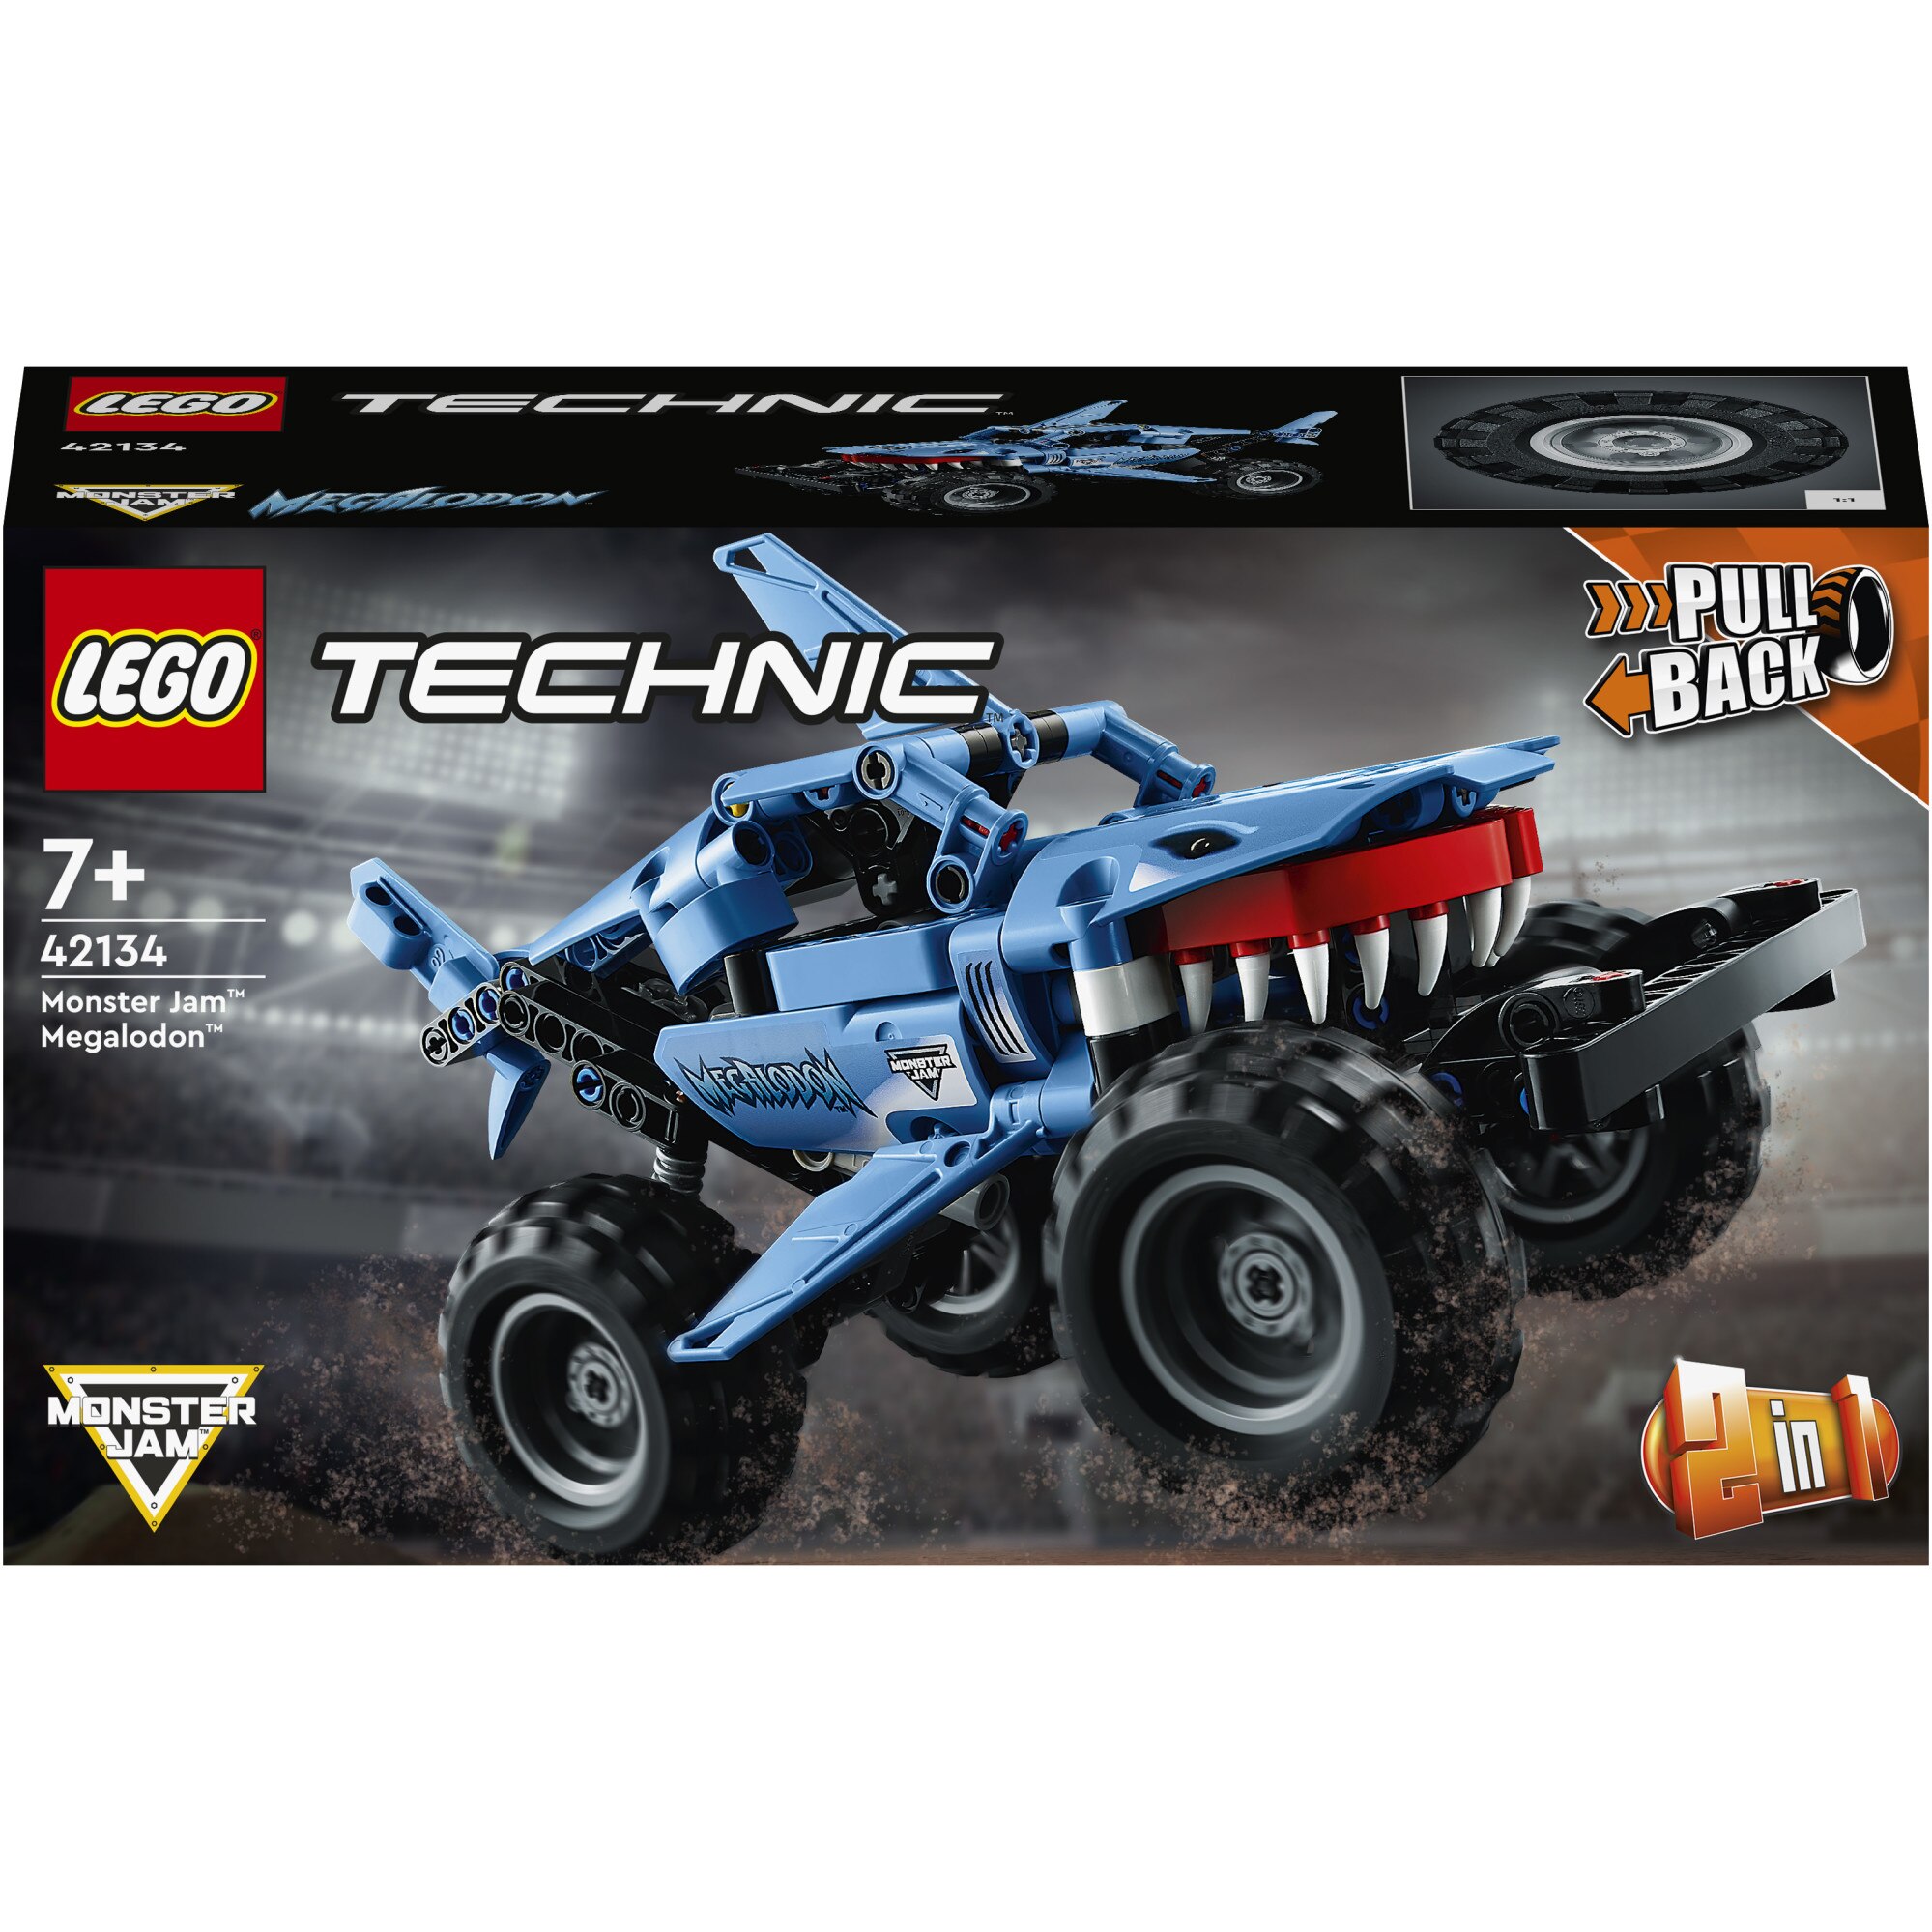 Fotografie LEGO® Technic - Monster Jam™ Megalodon™ 42134, 260 piese